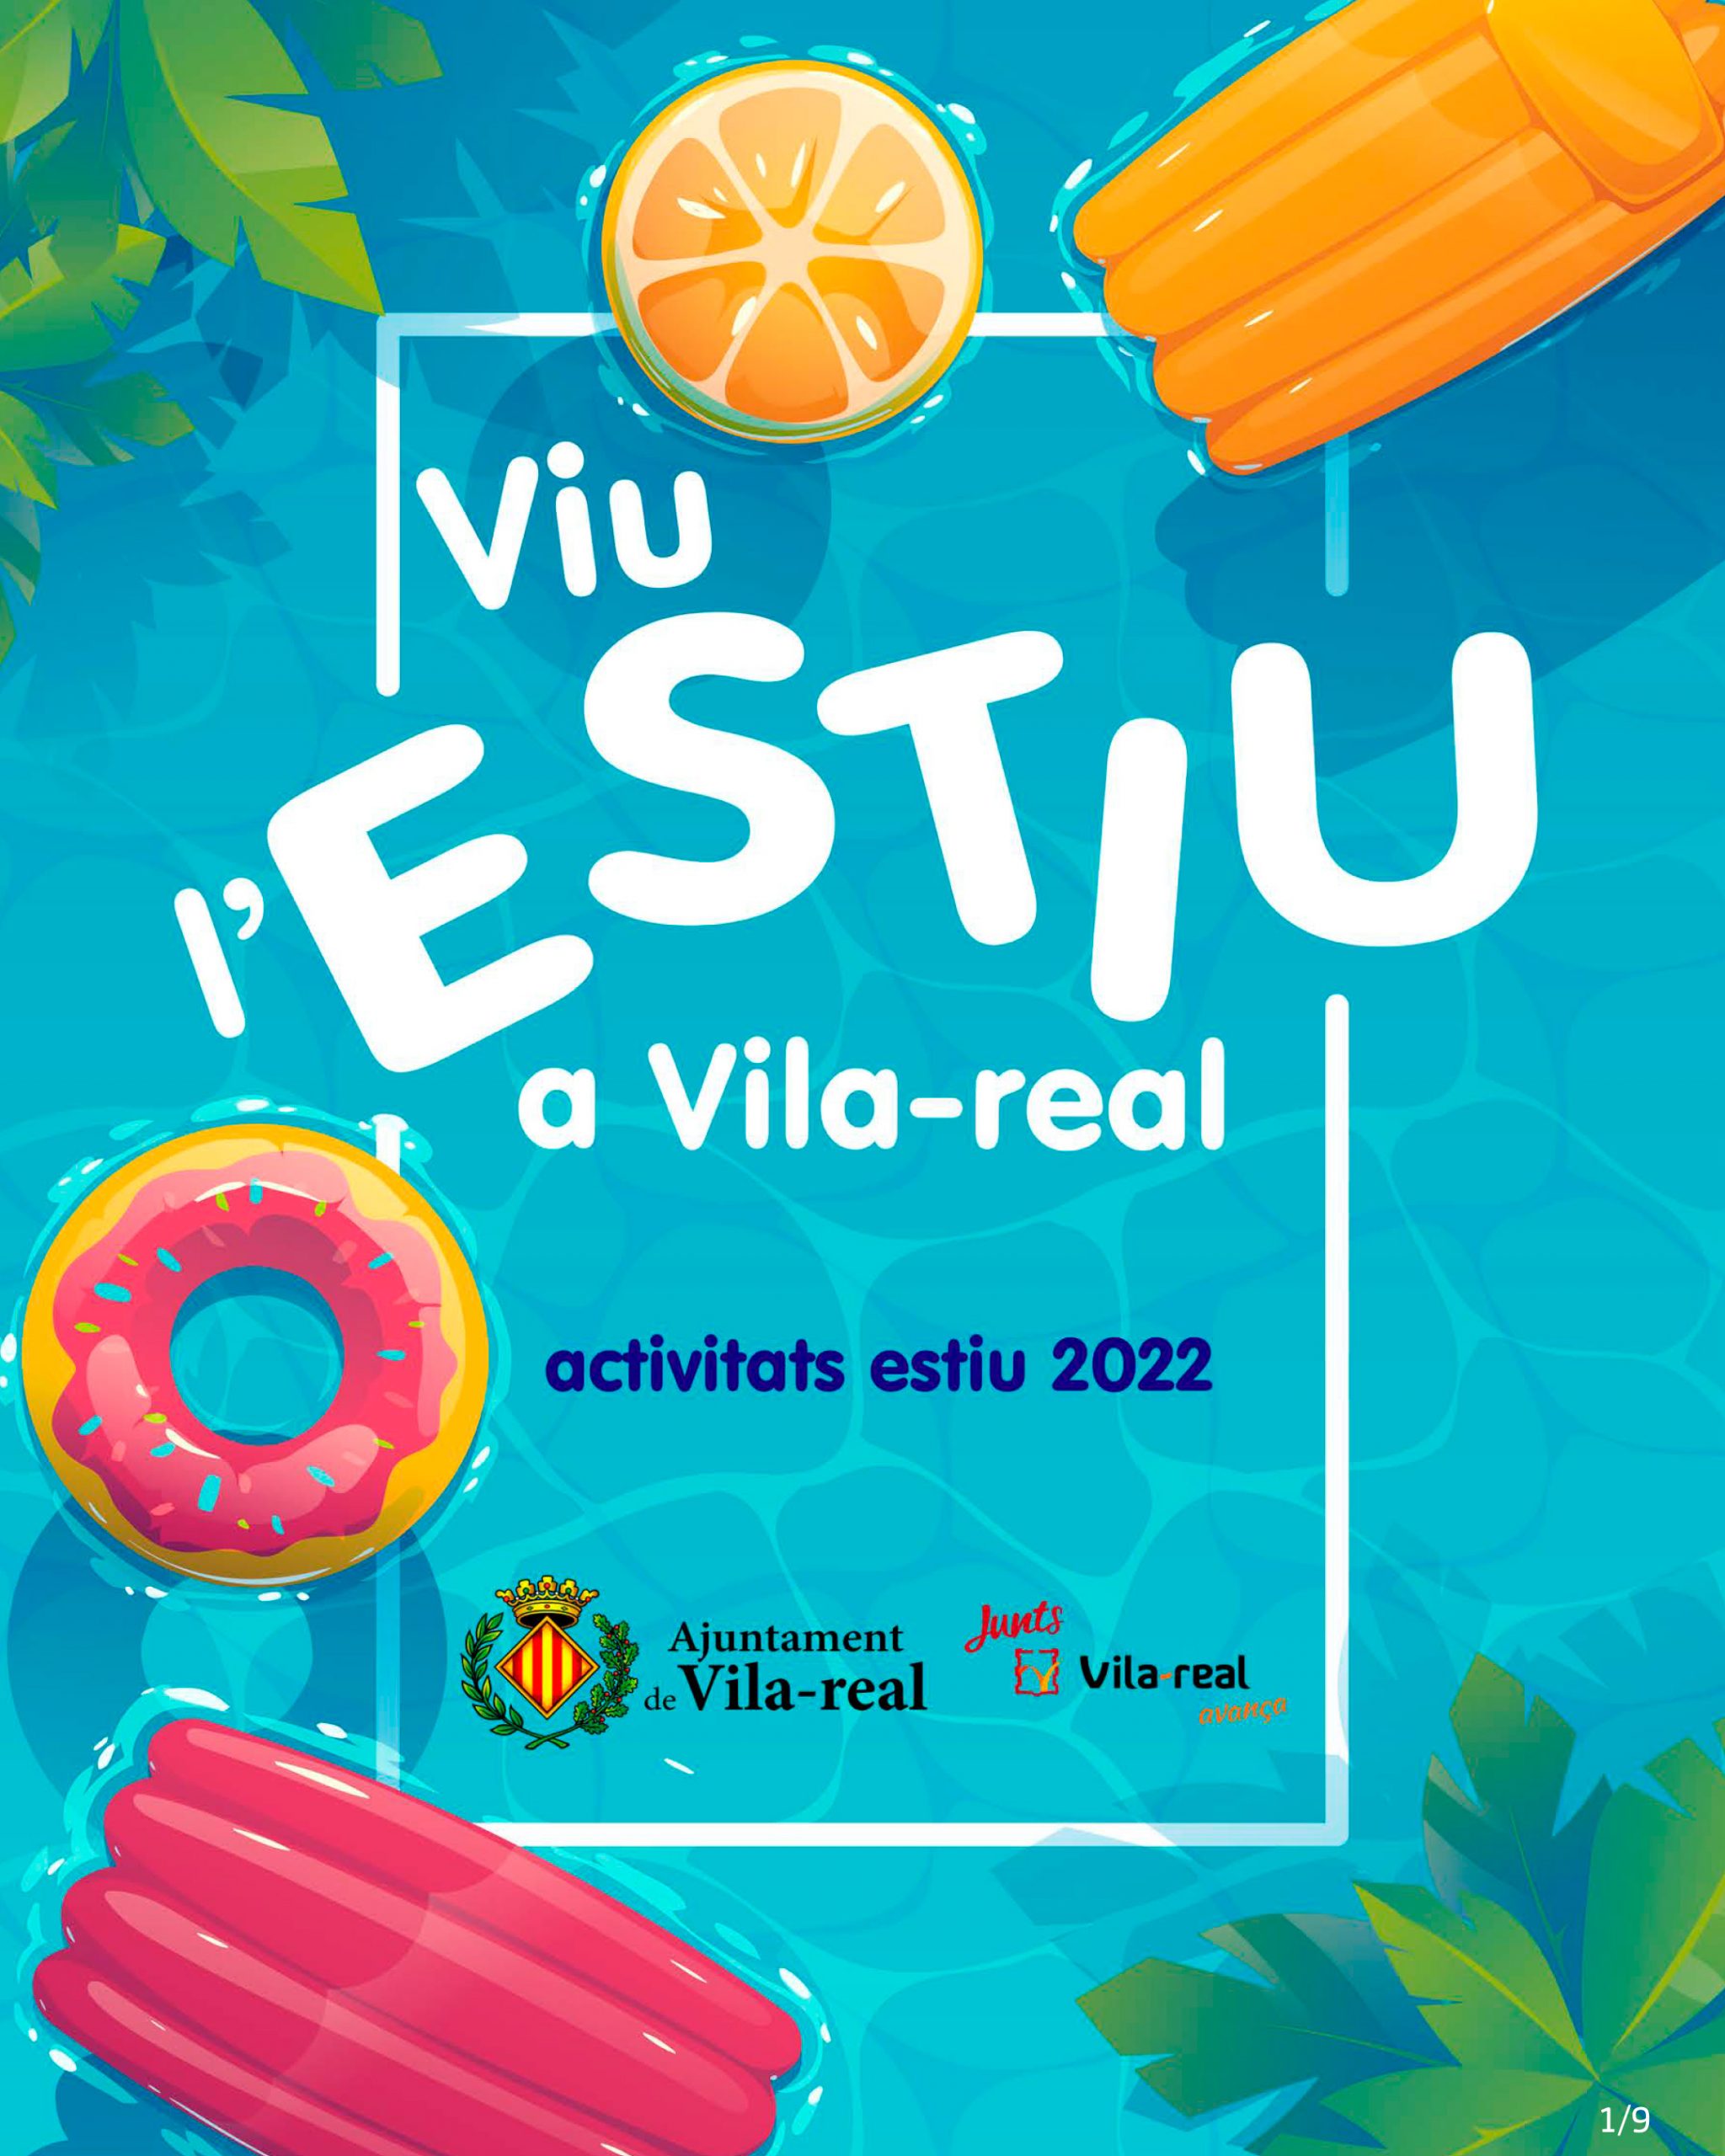 Vila-real anima a disfrutar del verano en la ciudad con actividades familiares, visitas guiadas, música, deporte y tradiciones